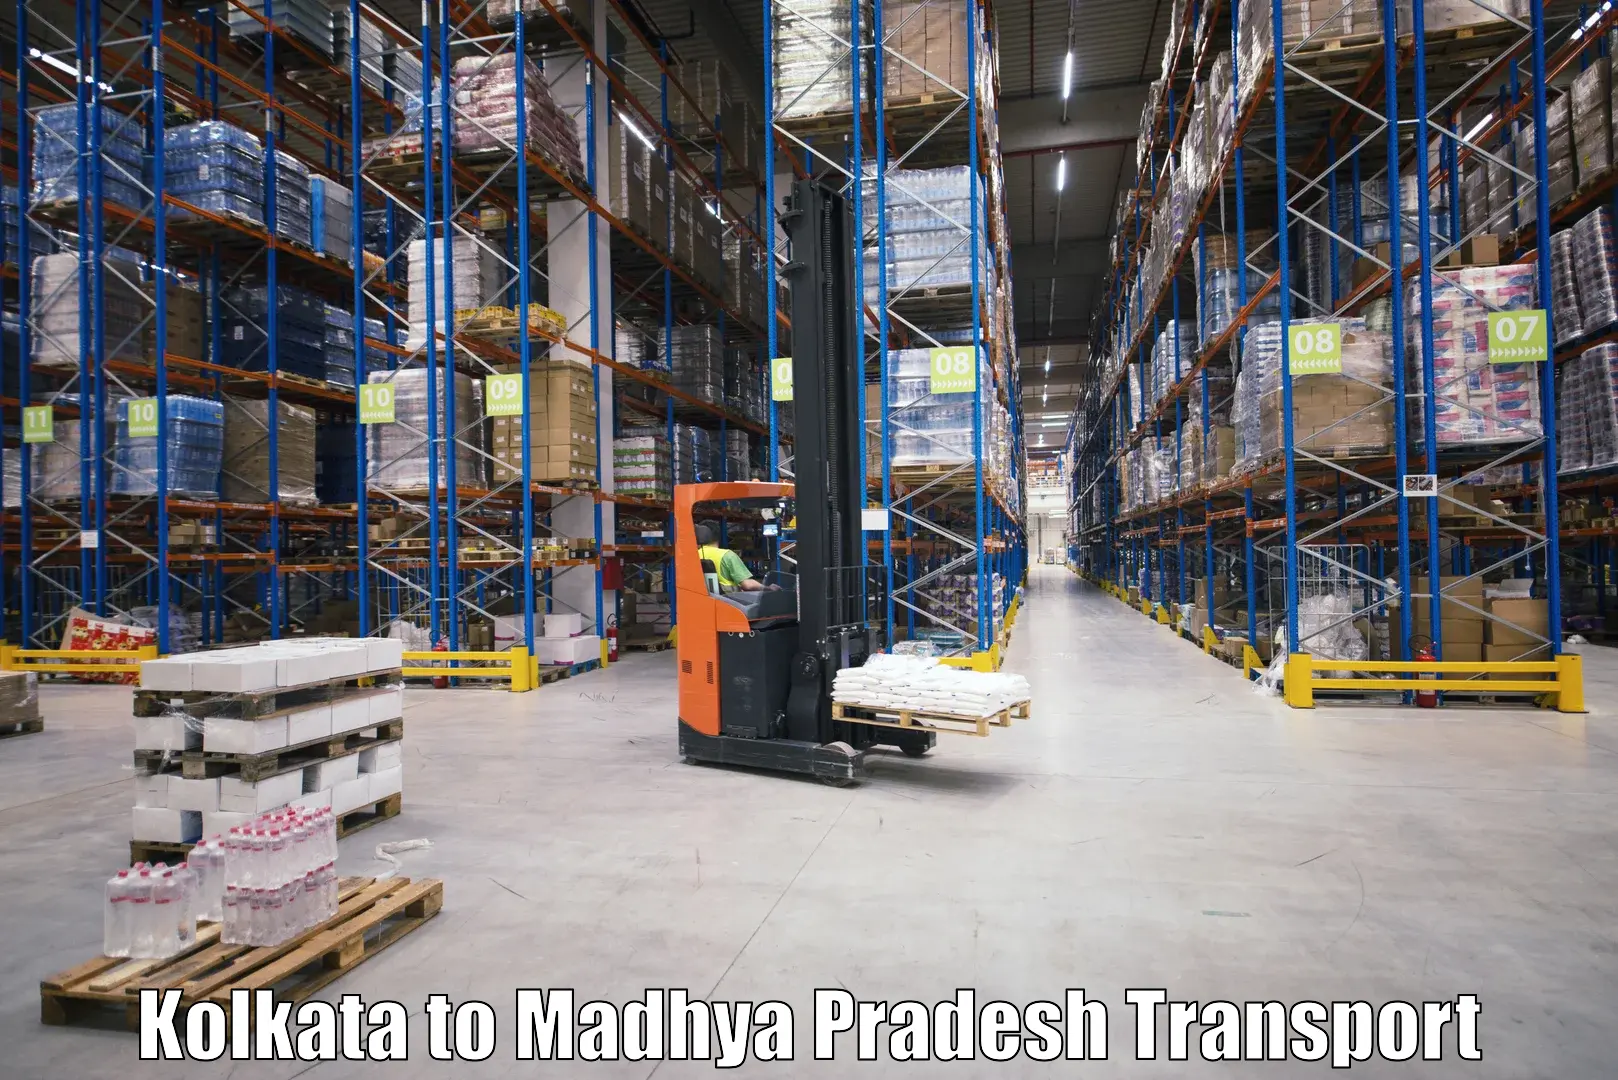 Shipping partner Kolkata to Ashta